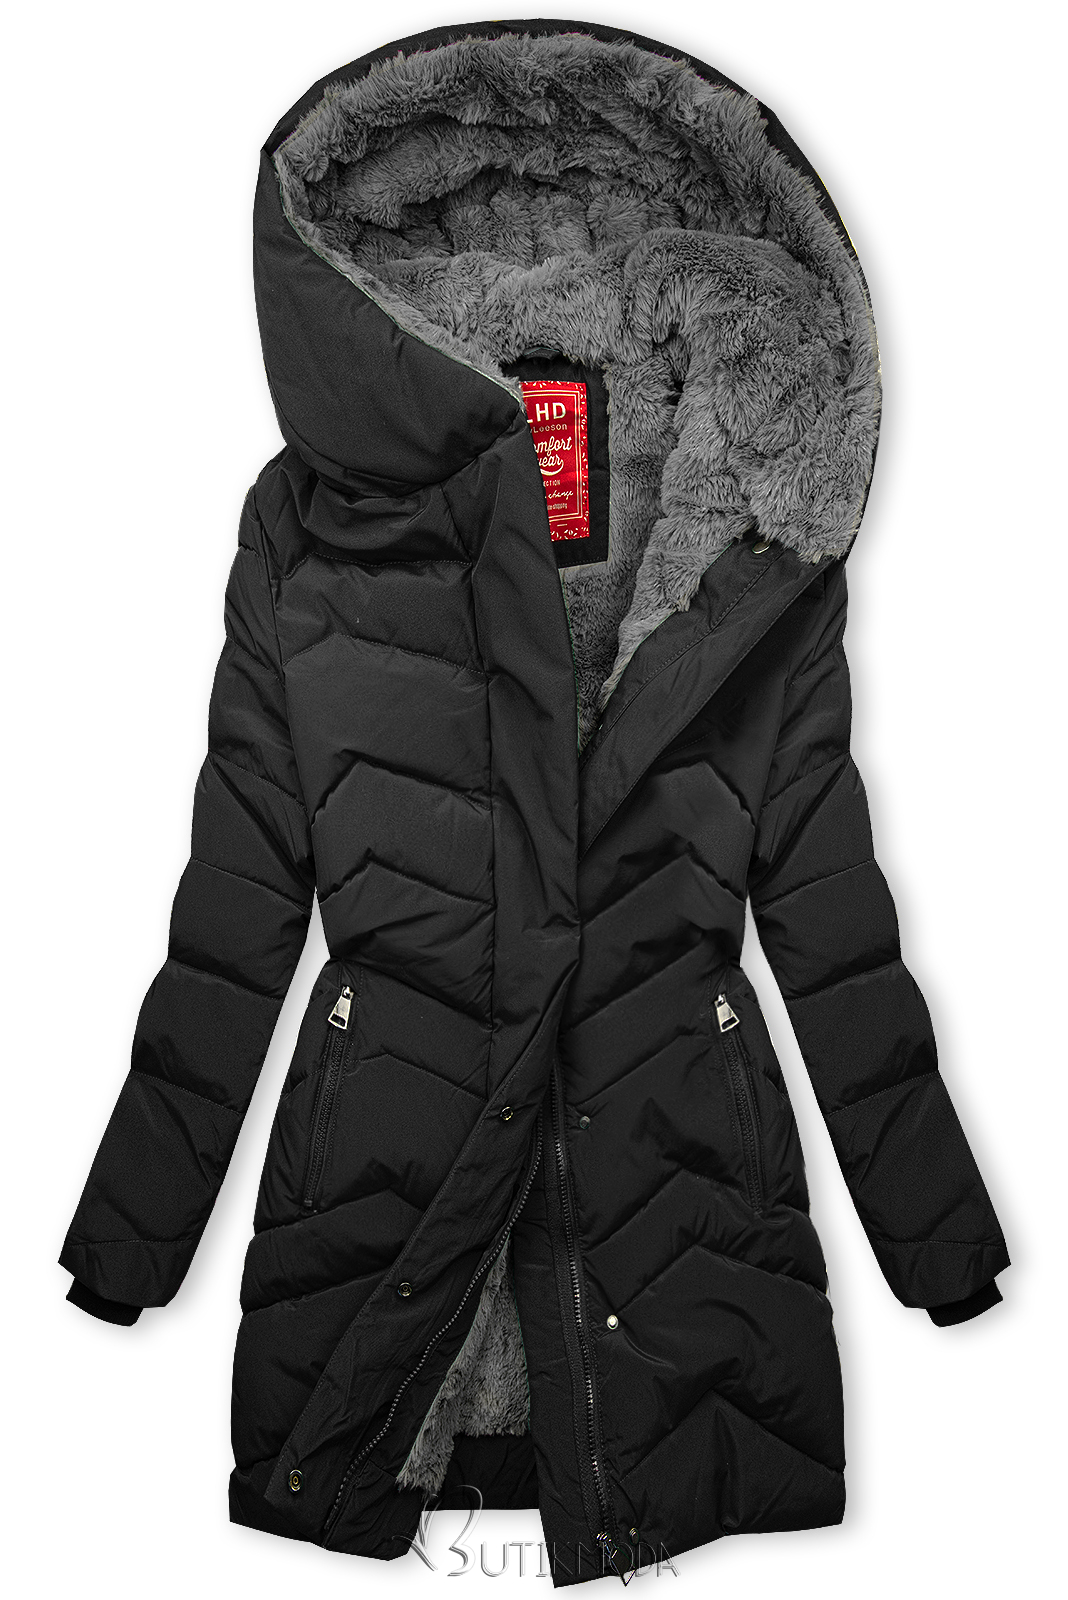 Fekete színű steppelt téli kabát plüssel